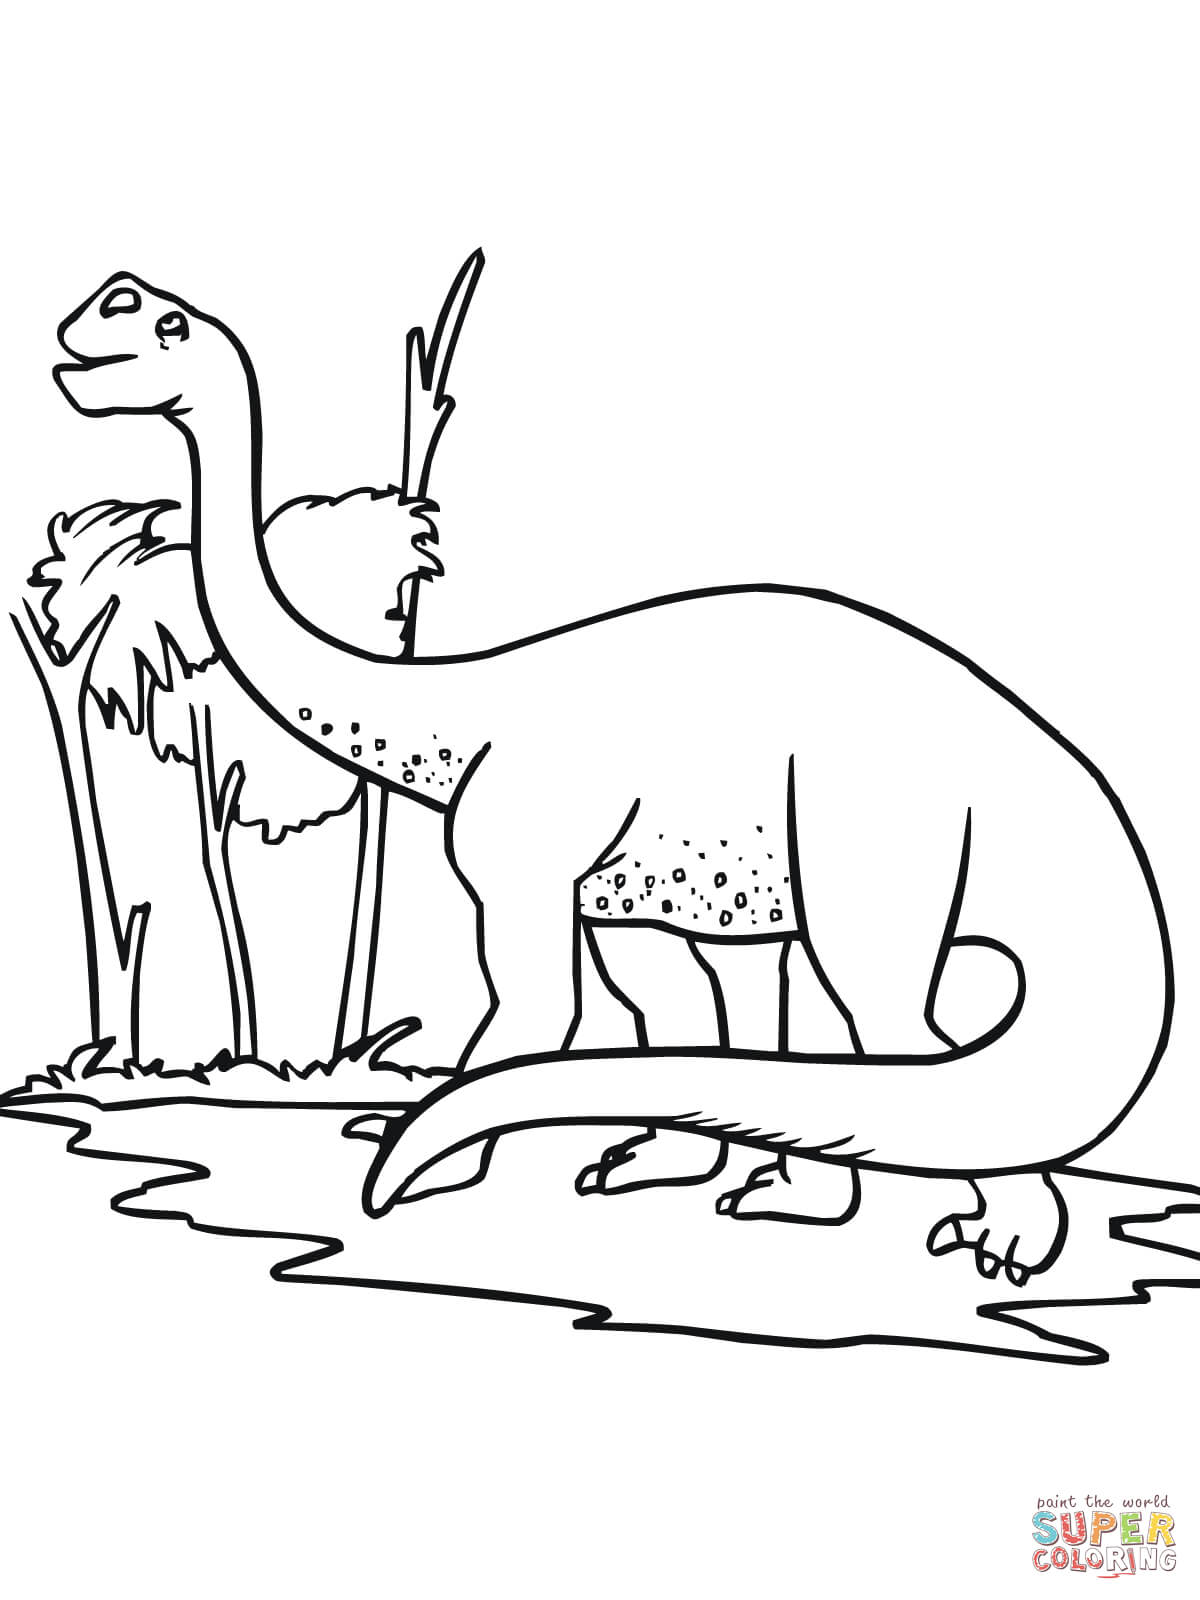 Раскраска динозавра с длинной шеей Бронтозавр динозавр с длинным хвостом и длинной шеей. Скачать раскраску онлайн и распечатать